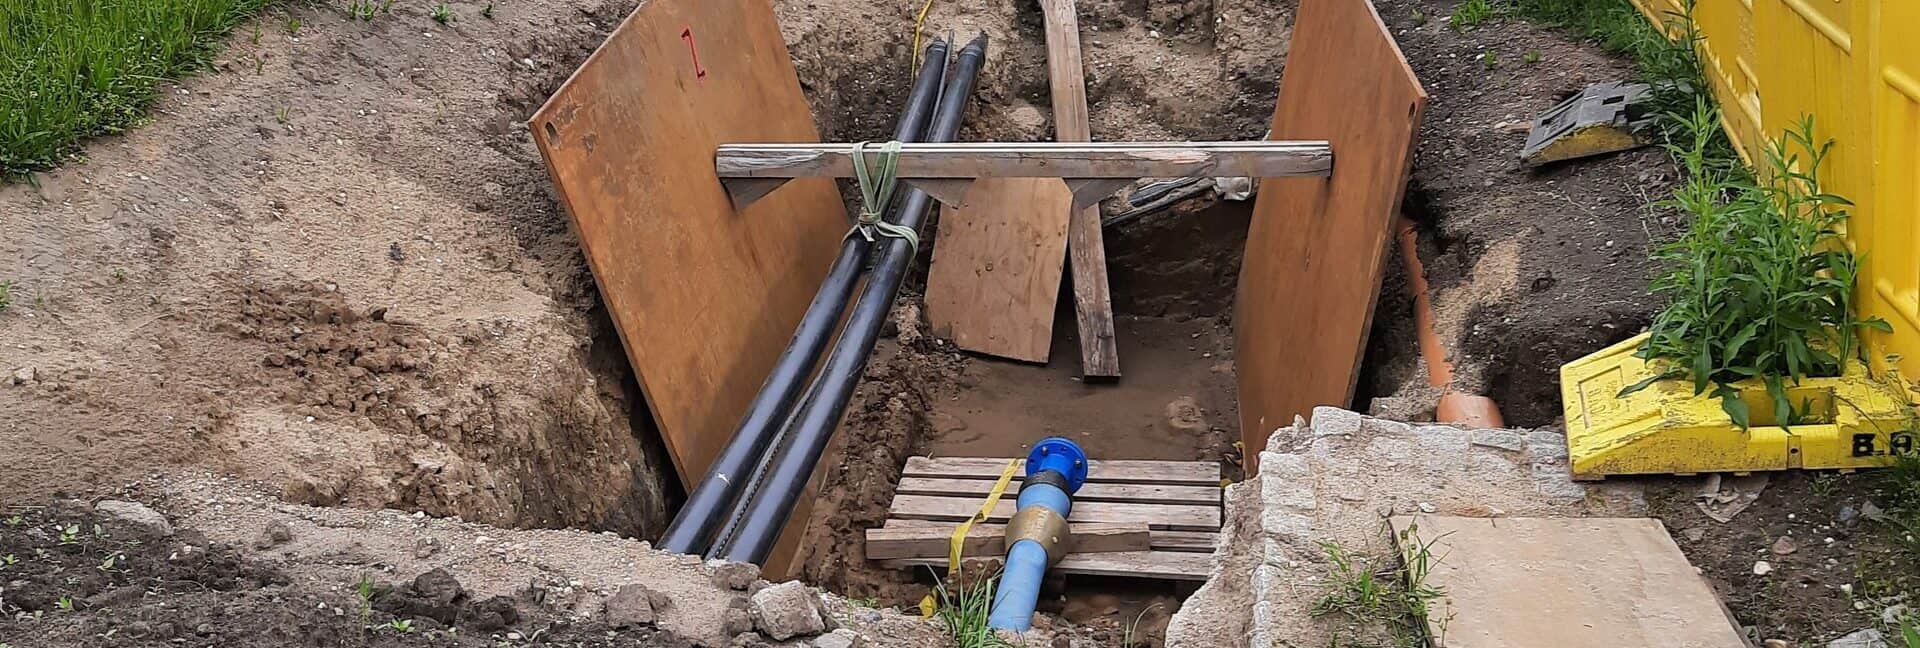 Neuverlegung Trinkwasserleitung